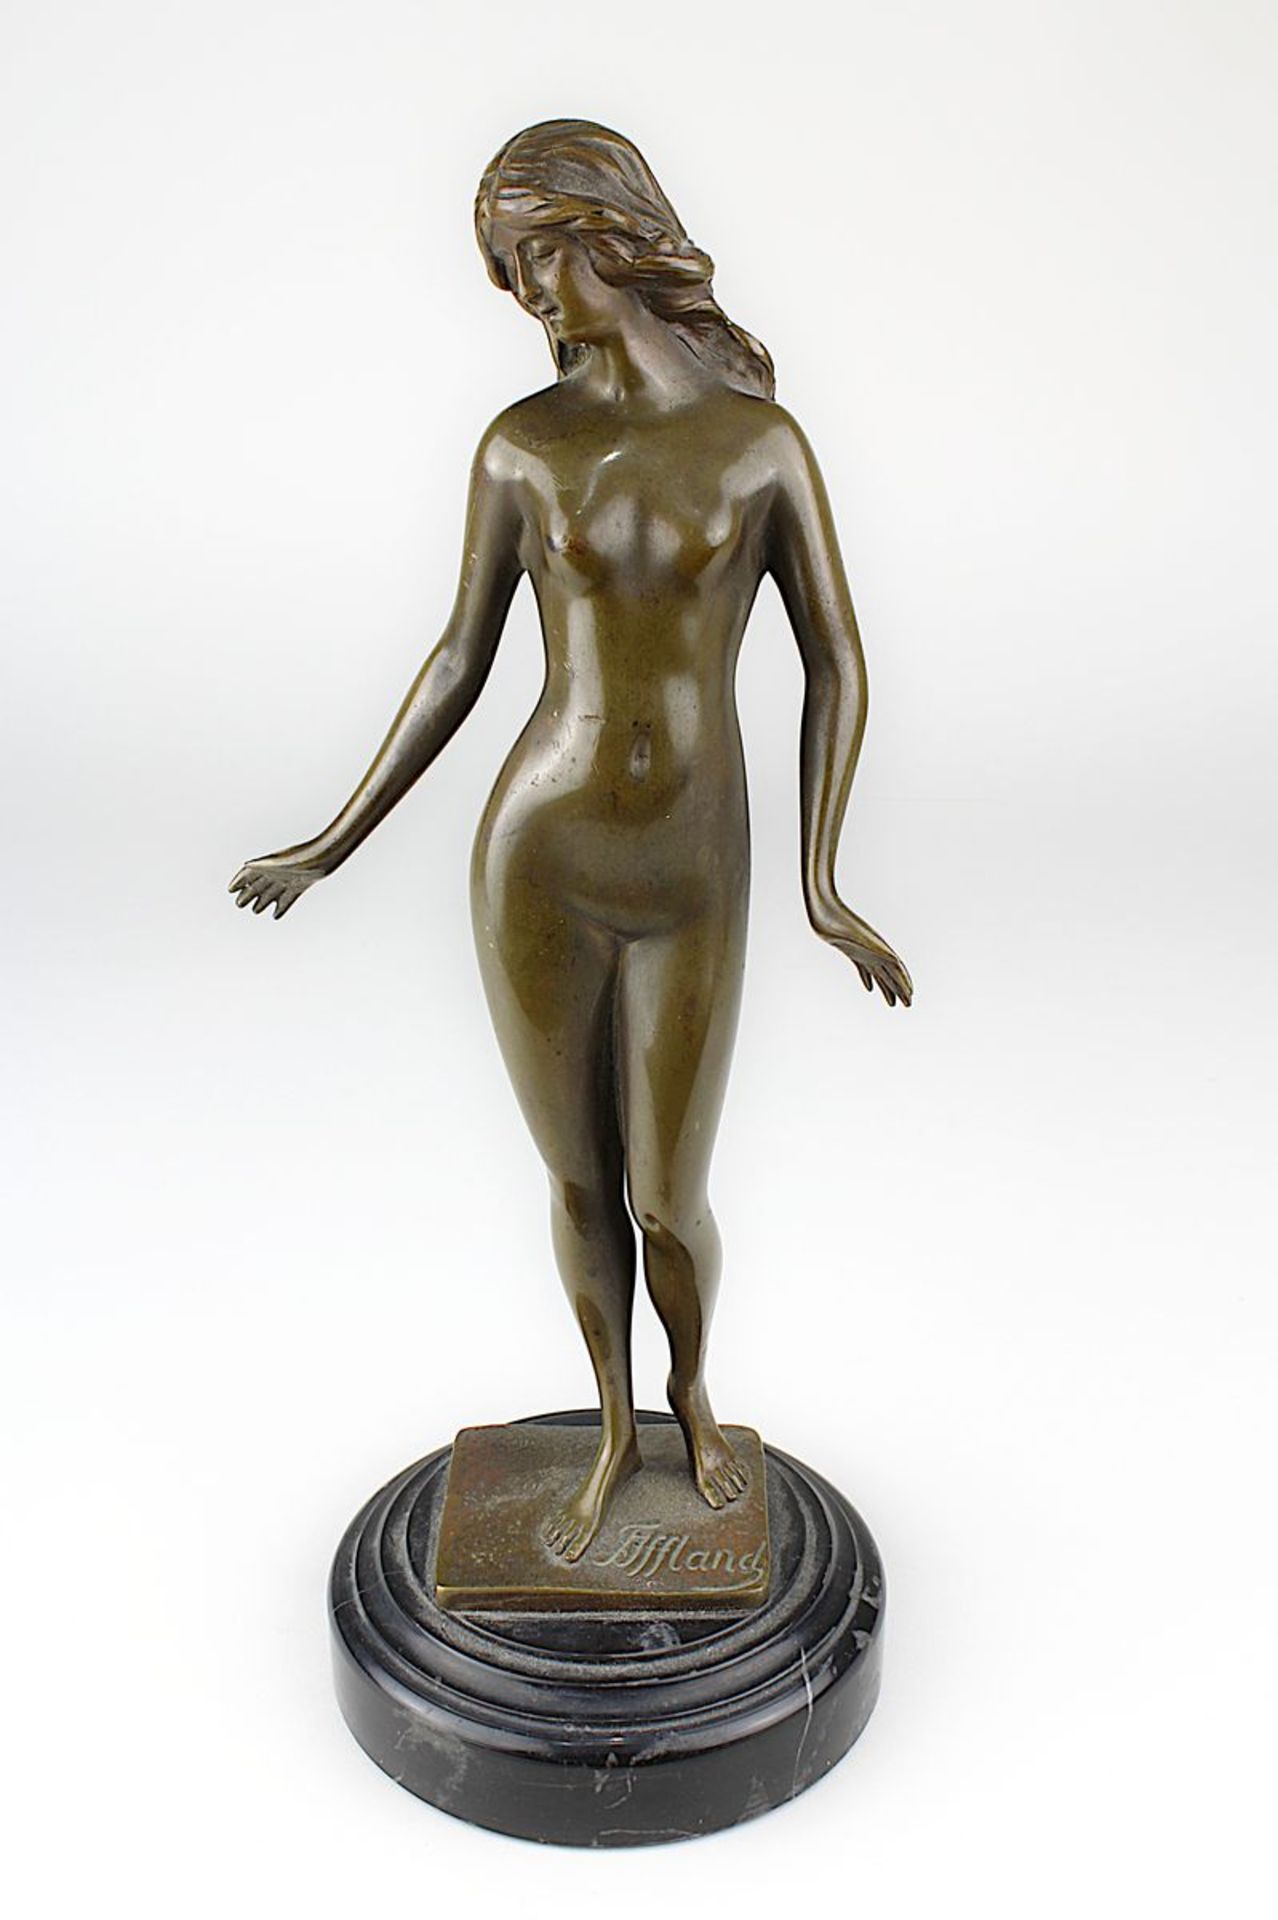 Iffland, Franz (Berlin 1862 - 1935 Berlin), Bronzefigur einer nackten jungen Schönen mit langem